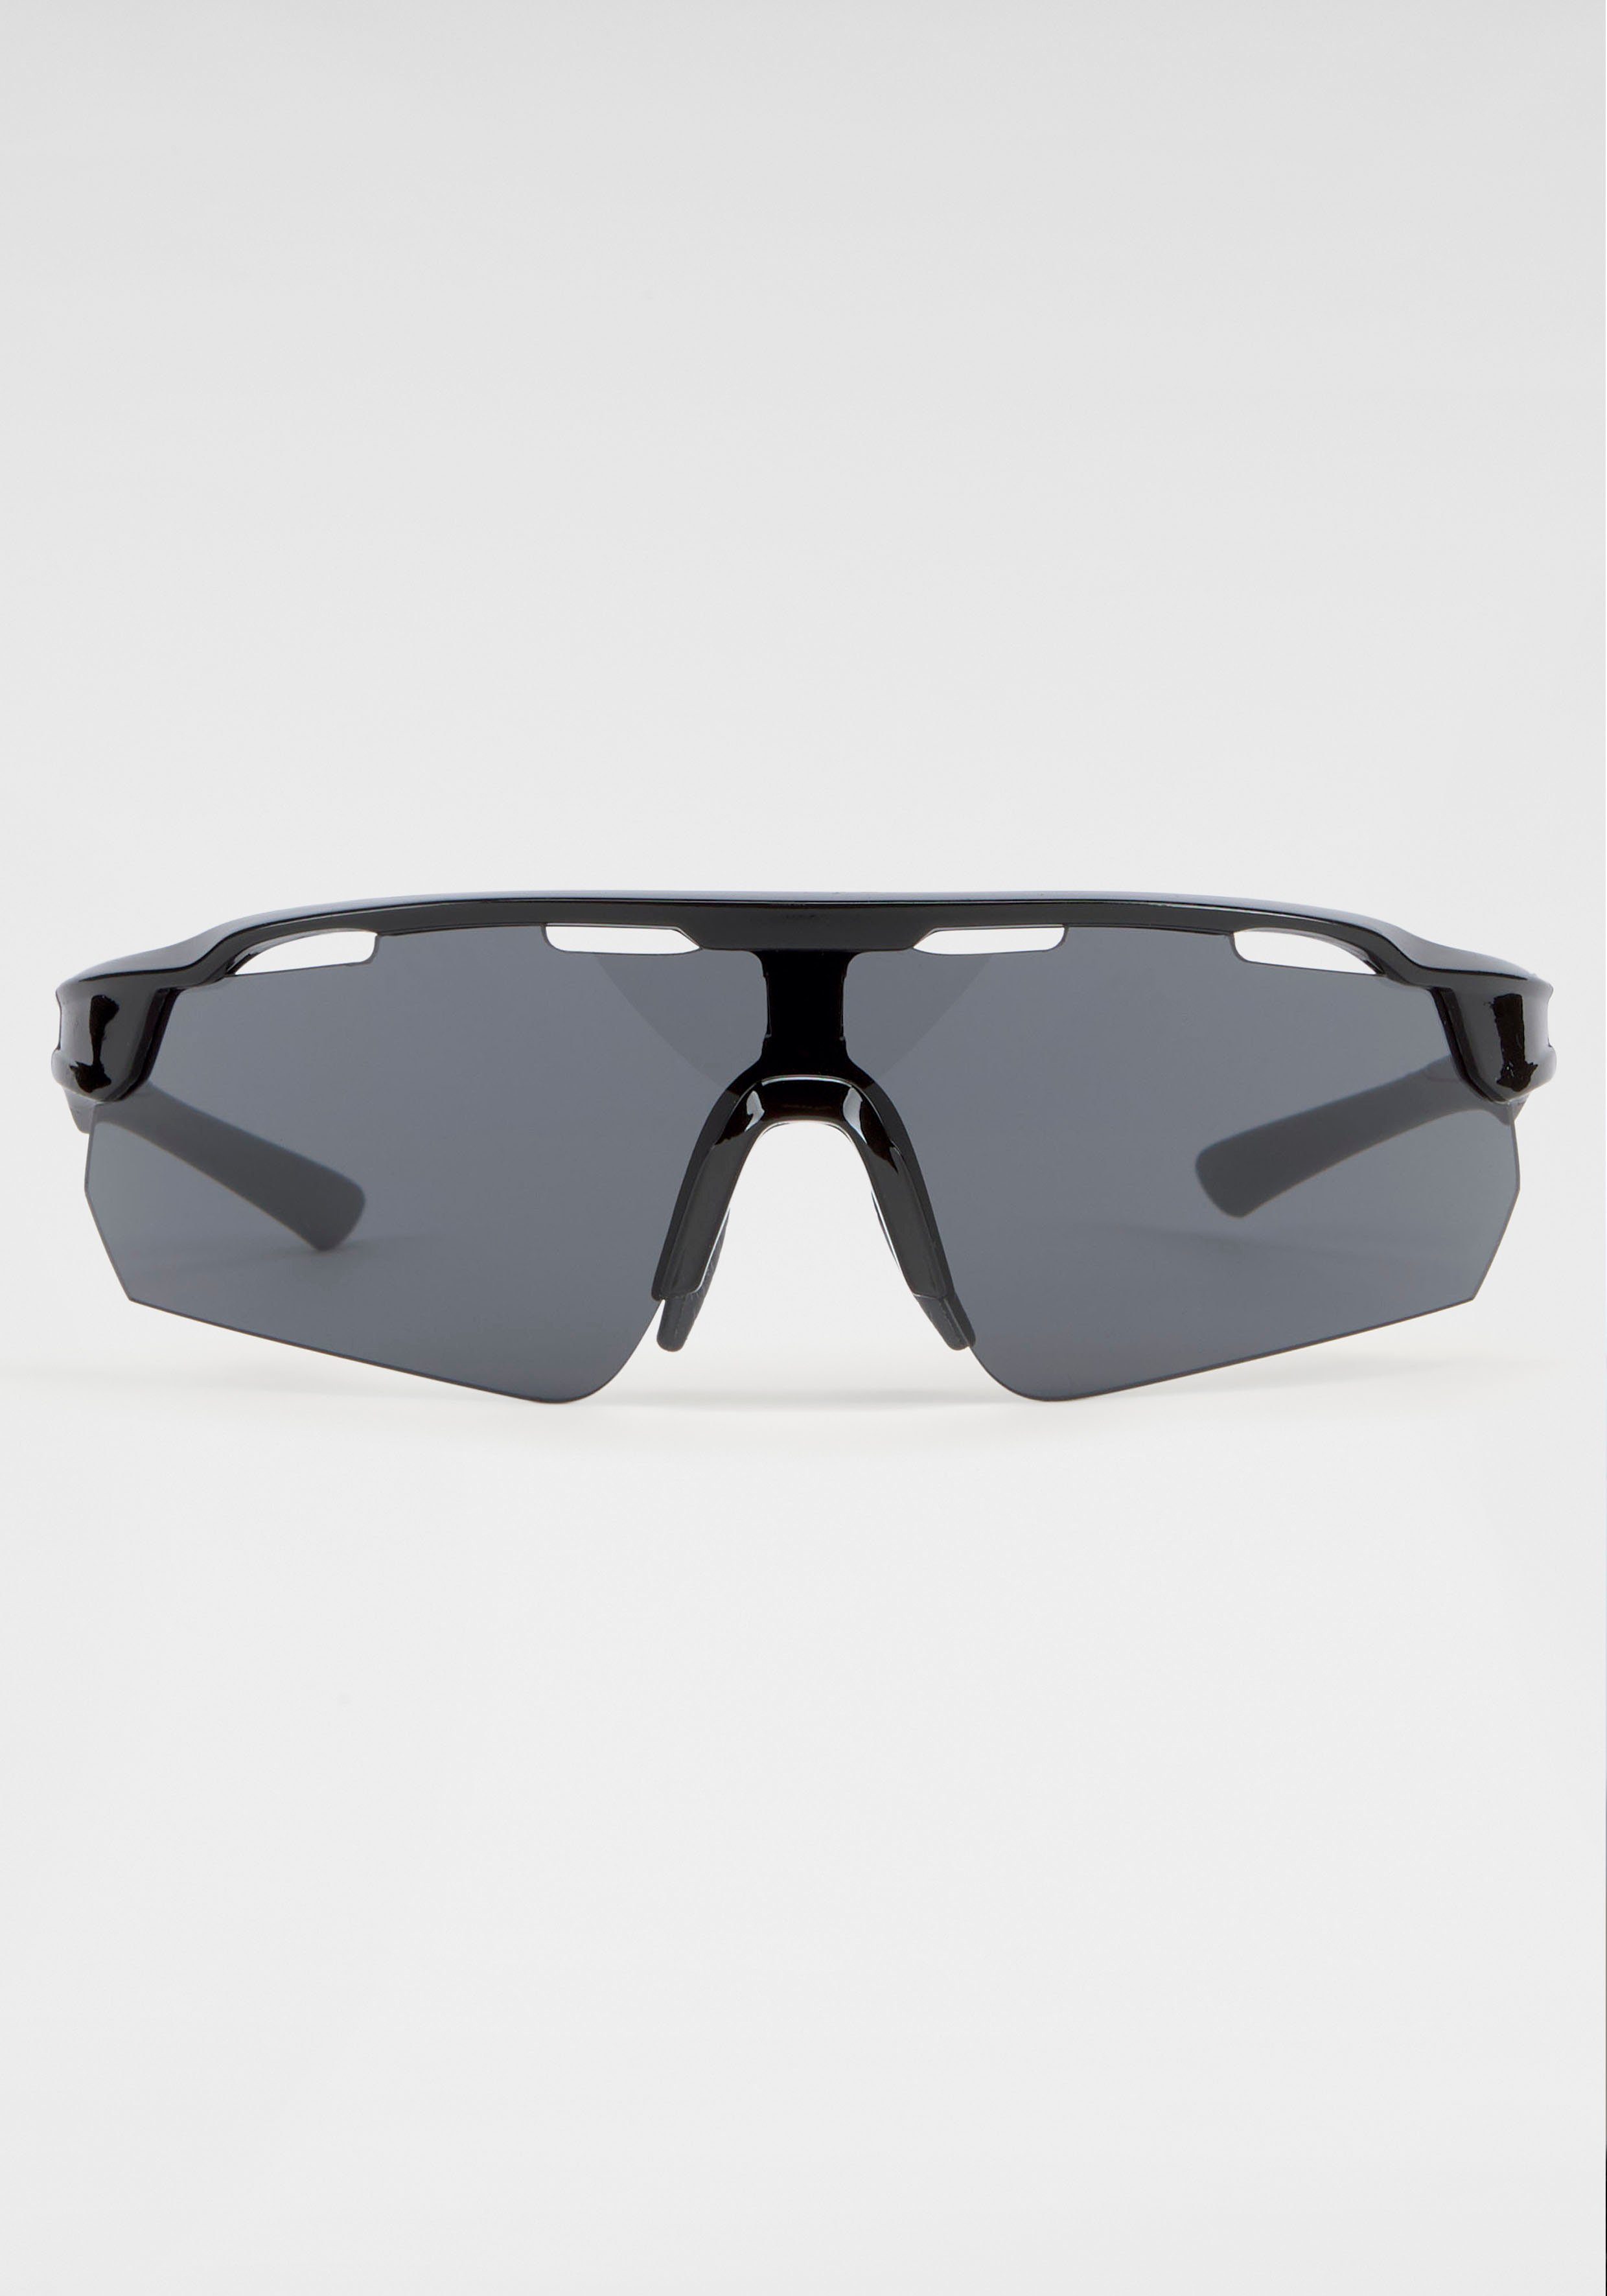 Eyewear mit gebogenen Sonnenbrille Gläsern BACK IN BLACK